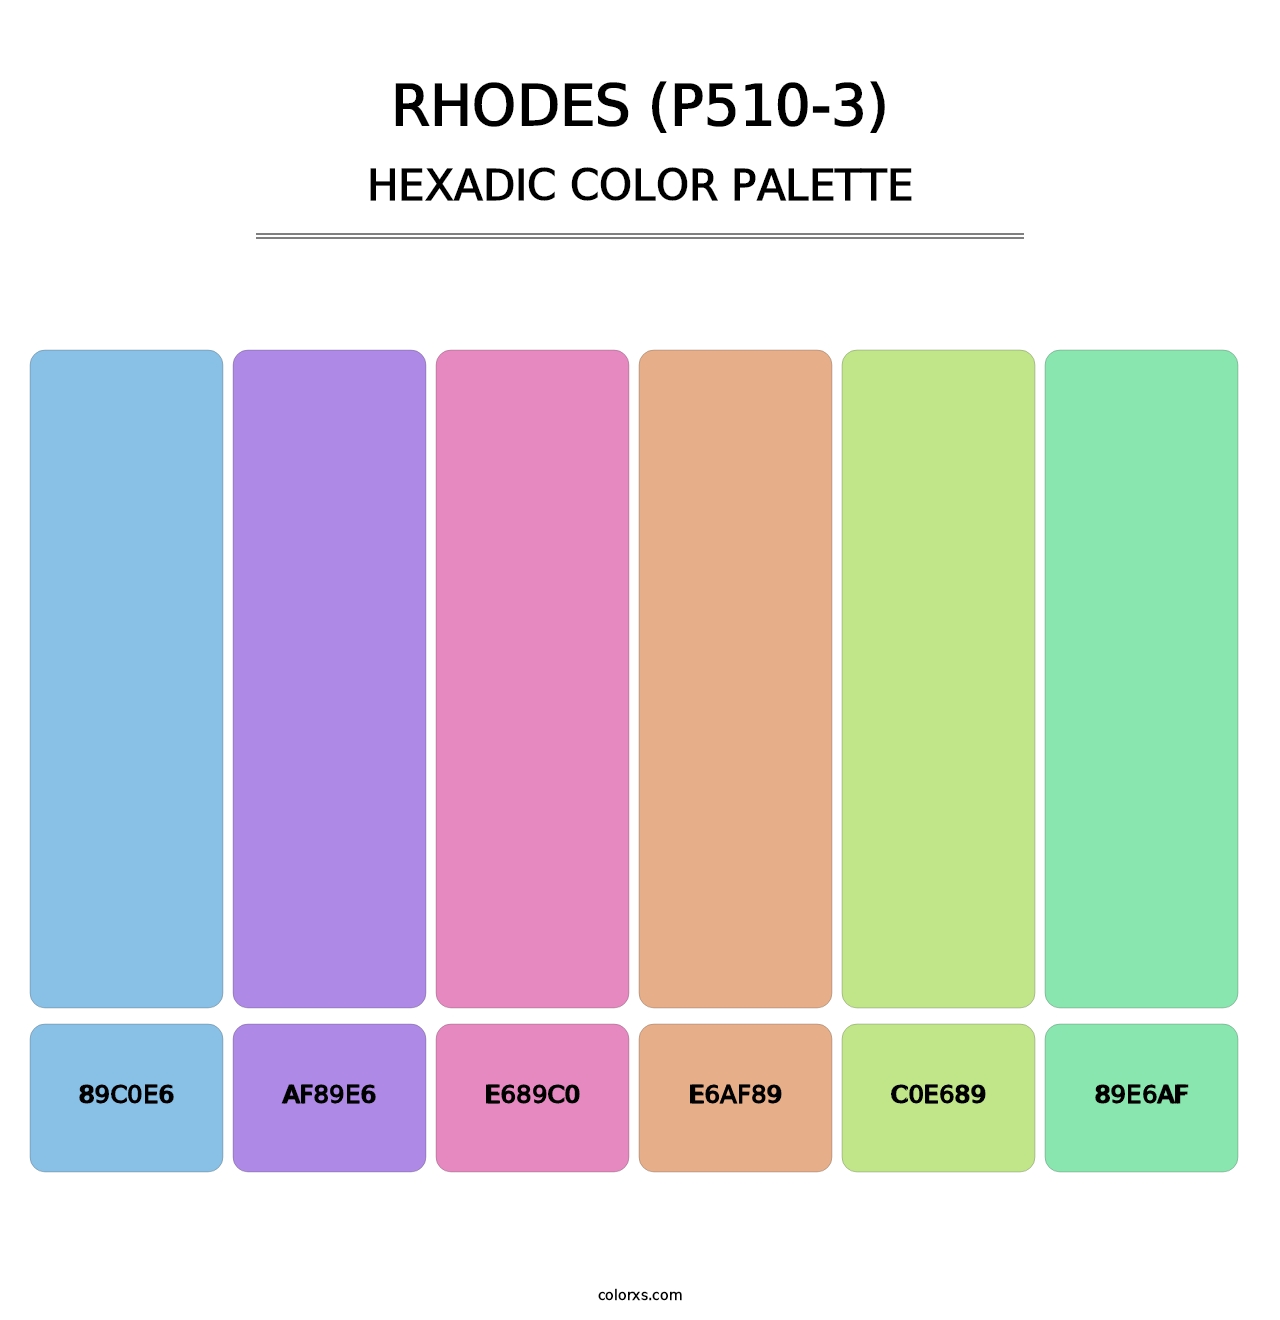 Rhodes (P510-3) - Hexadic Color Palette